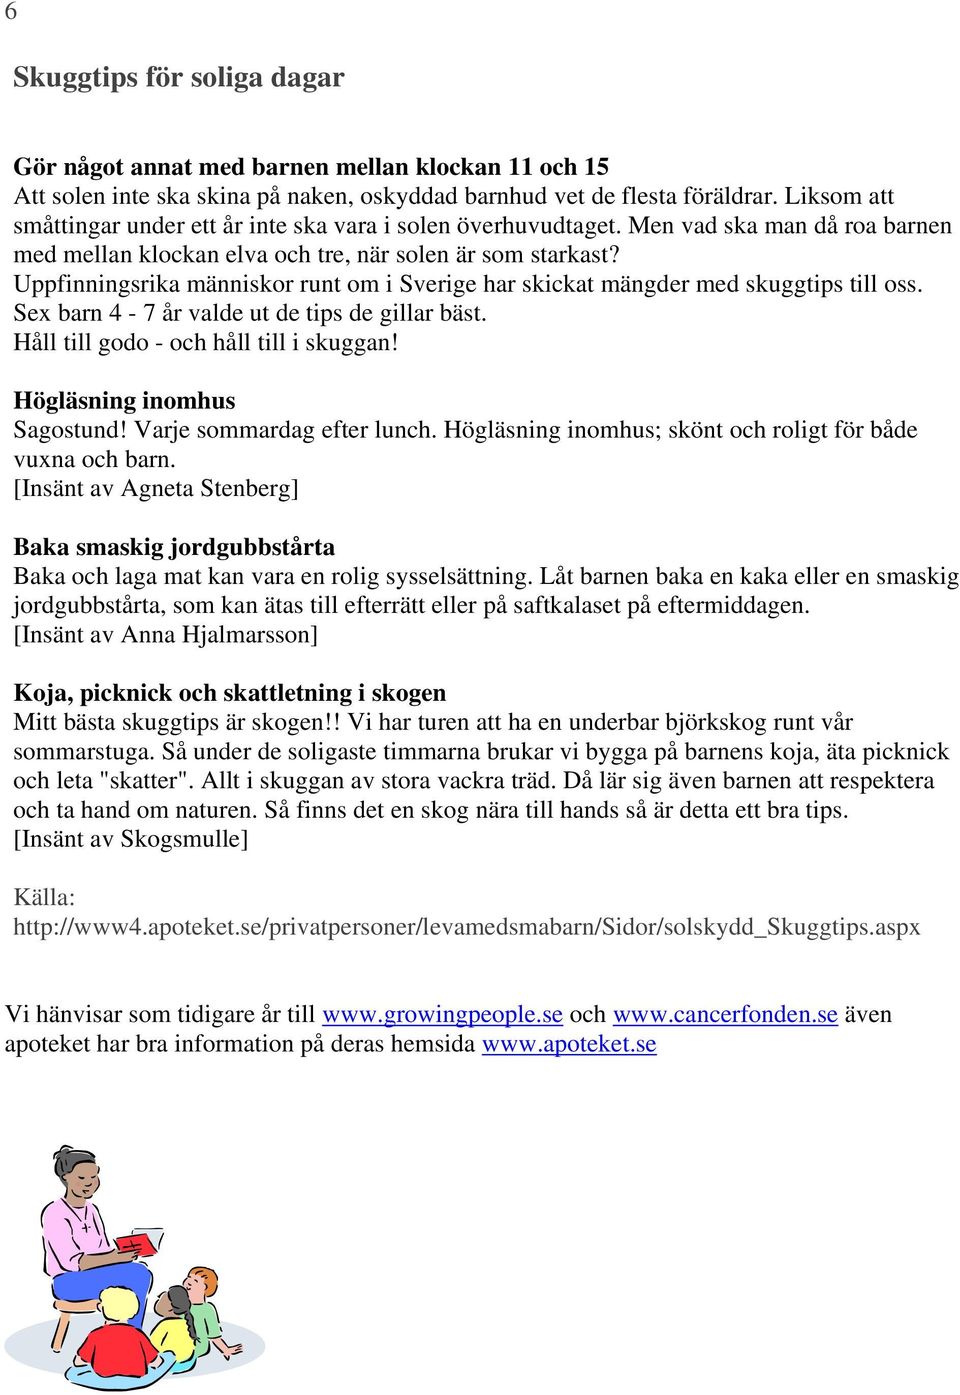 Uppfinningsrika människor runt om i Sverige har skickat mängder med skuggtips till oss. Sex barn 4-7 år valde ut de tips de gillar bäst. Håll till godo - och håll till i skuggan!